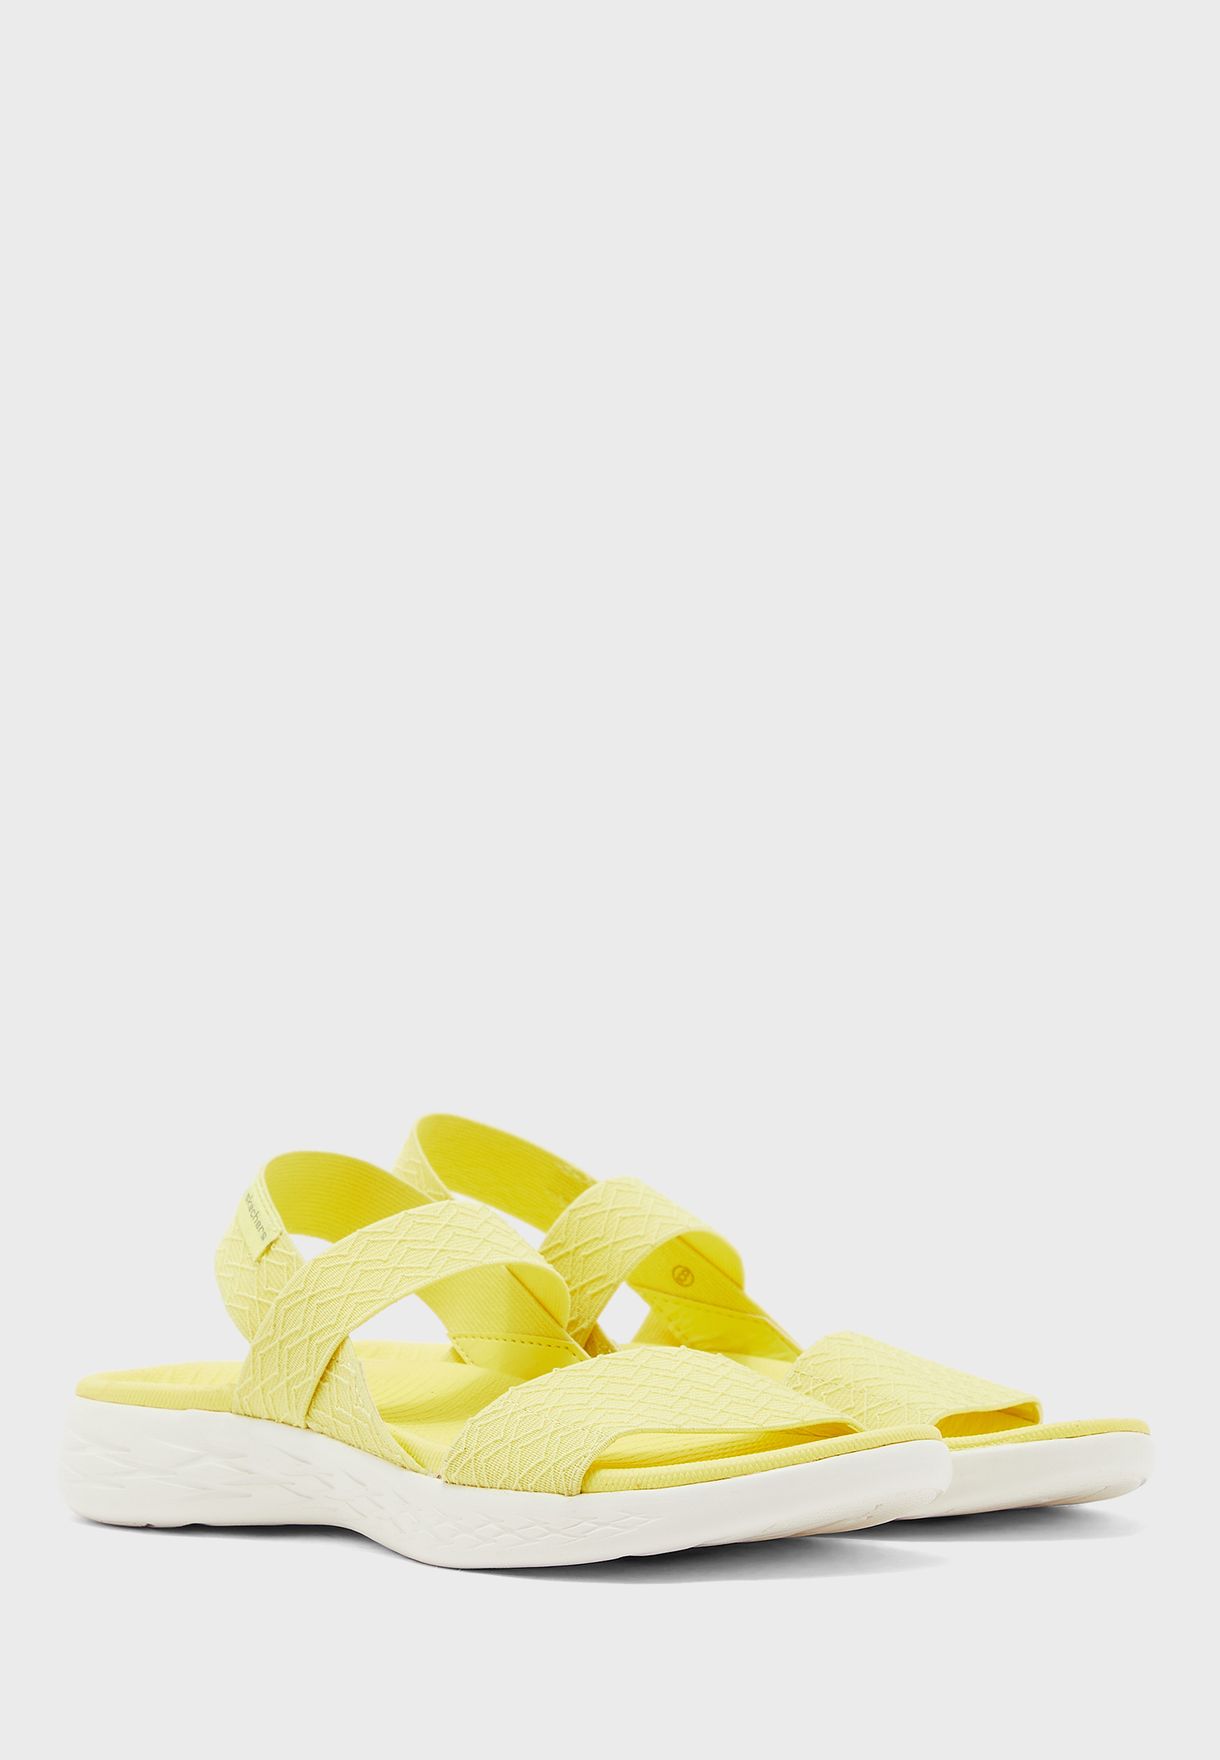 skechers yellow sandals